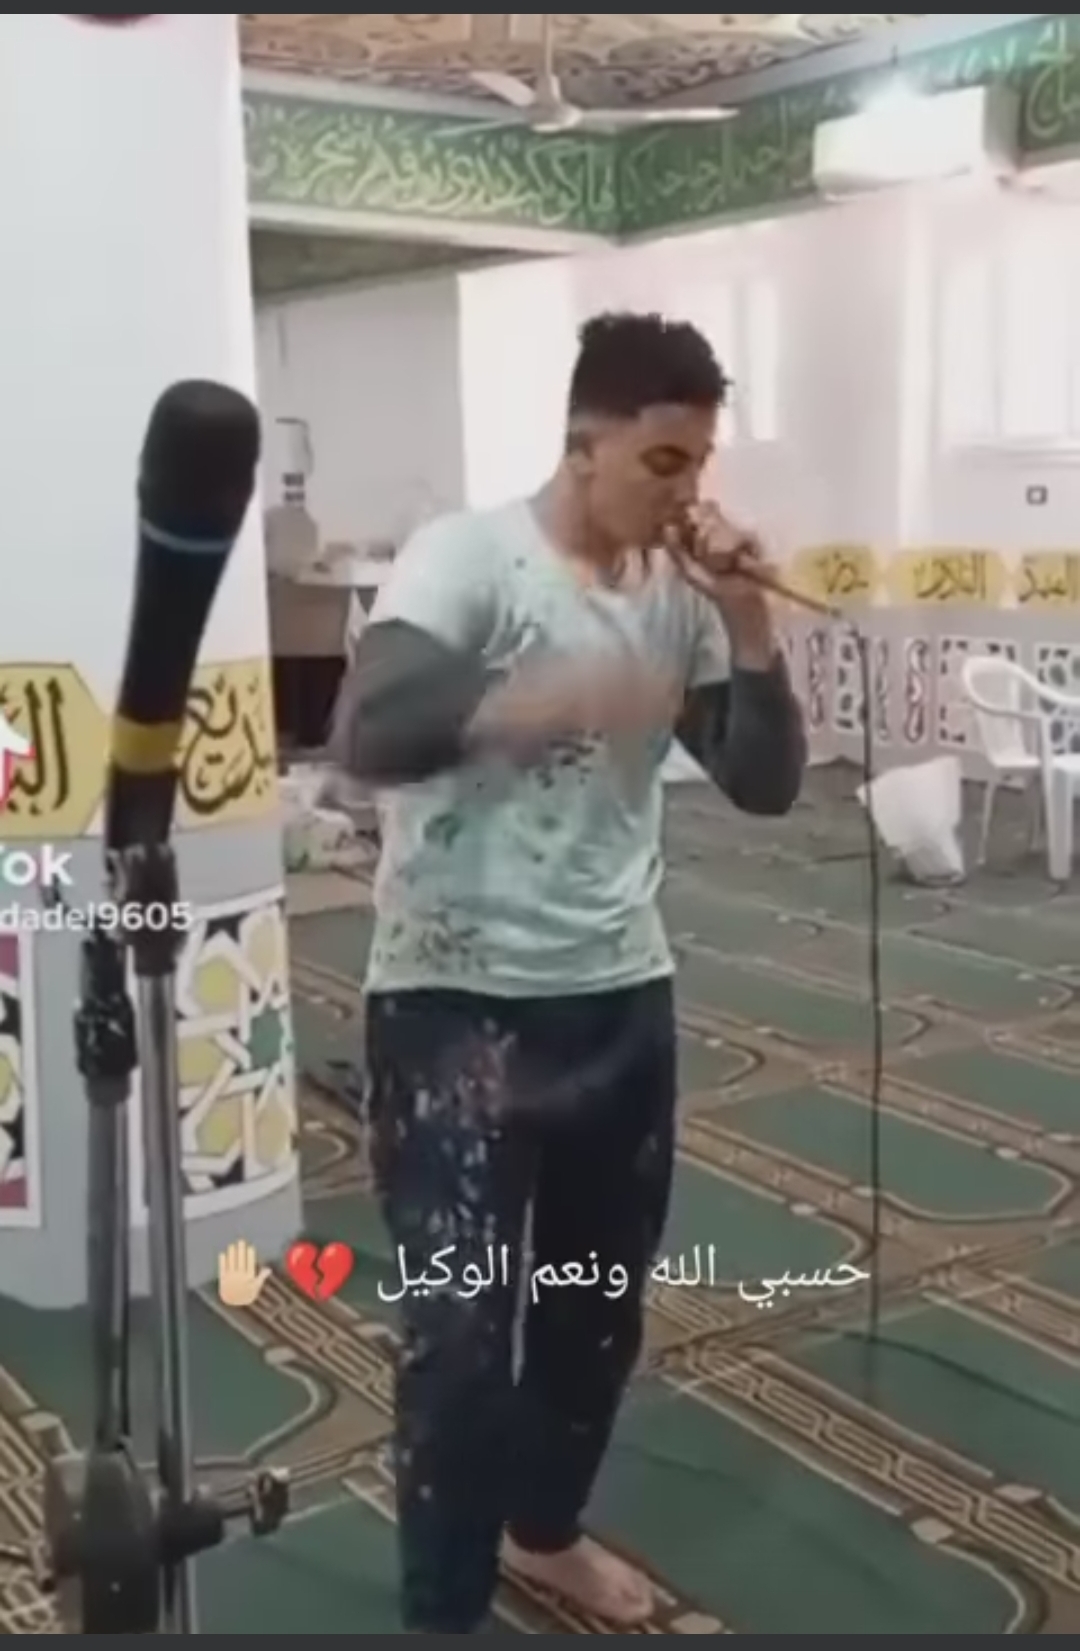 فيديو لشاب يرقص على أغاني مهرجانات داخل المسجد